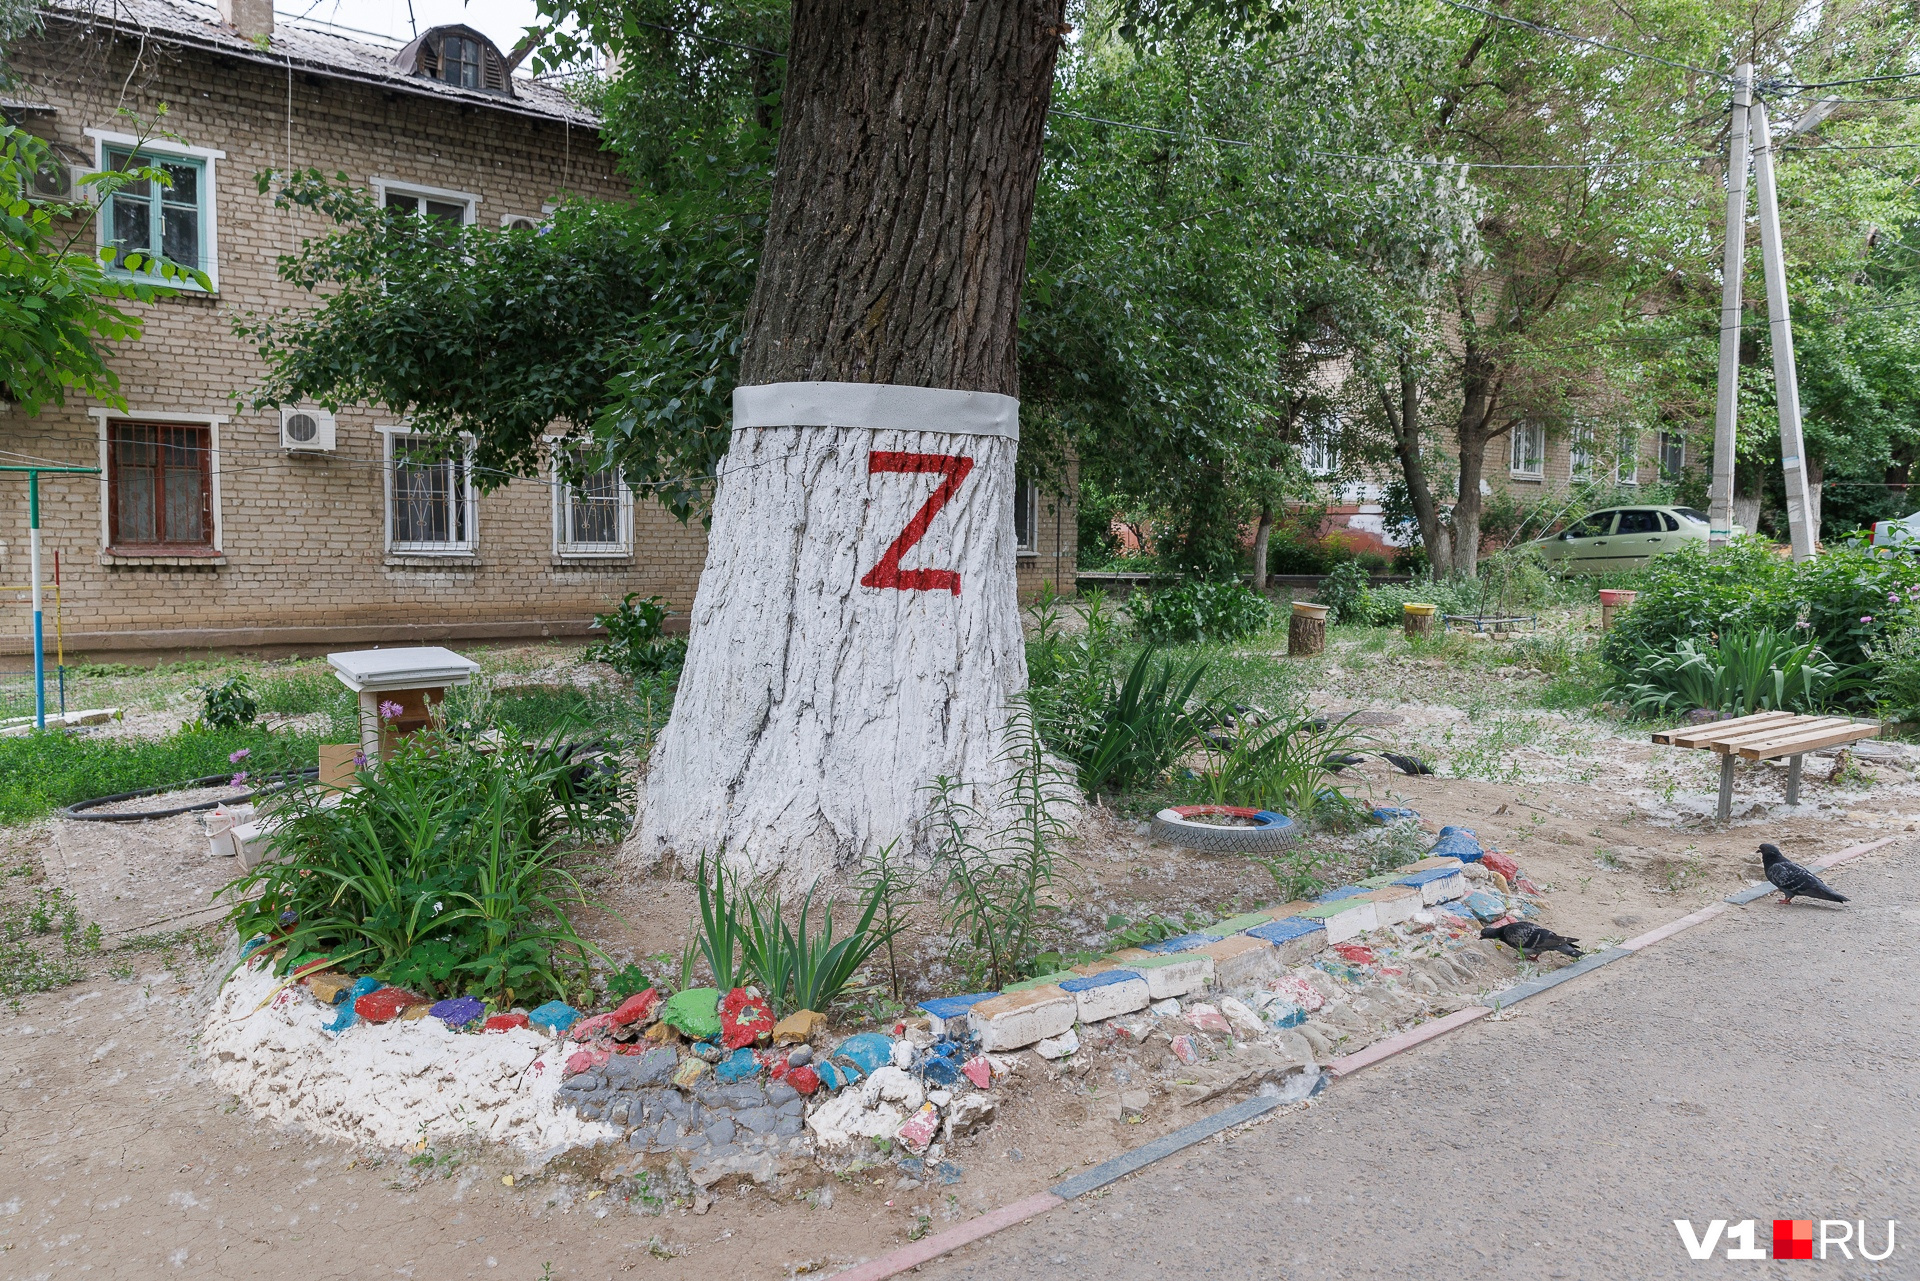 Соседка, которая кричит на детей участника СВО «убийцы и фашисты», разрисовала дерево буквой Z и клумбы в цвета российского флага